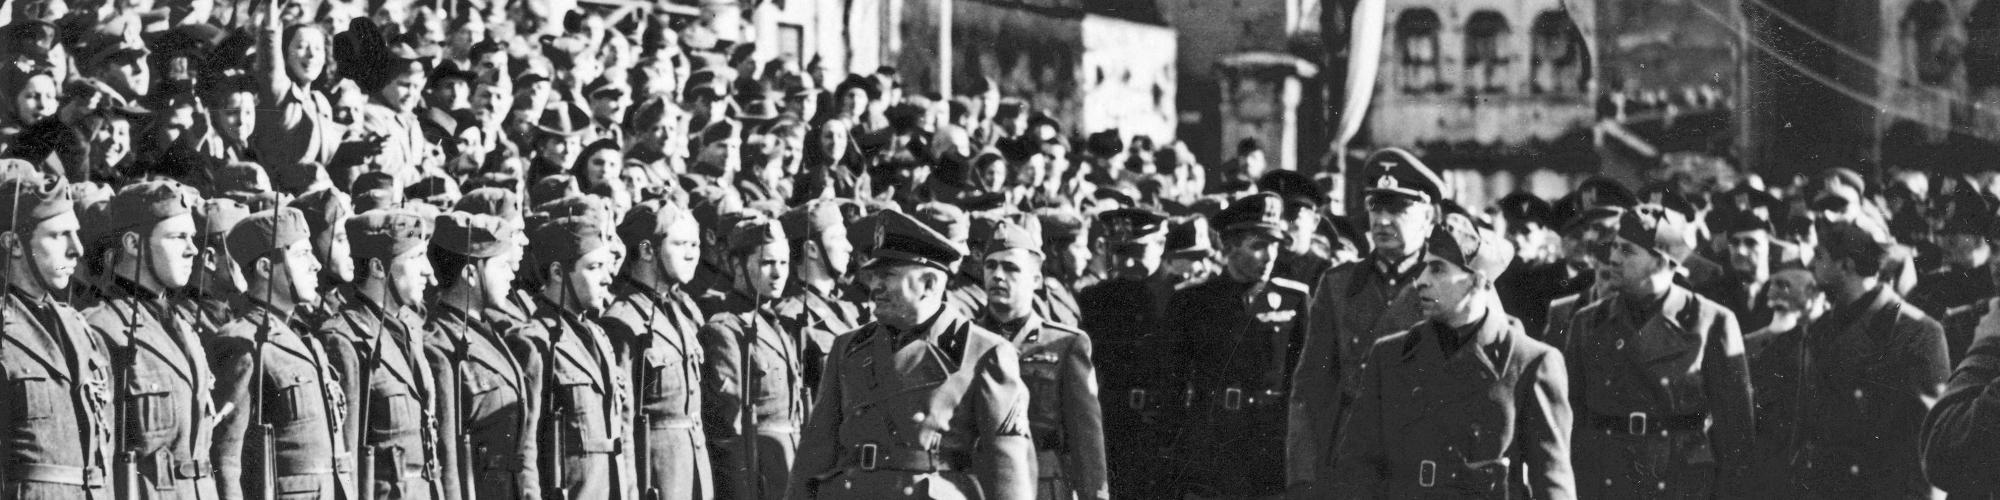 Foto nr 158641, 19e verjaardag van de oprichting van de fascistische militie, 1942 coll. Sipho, Rechten voorbehouden.